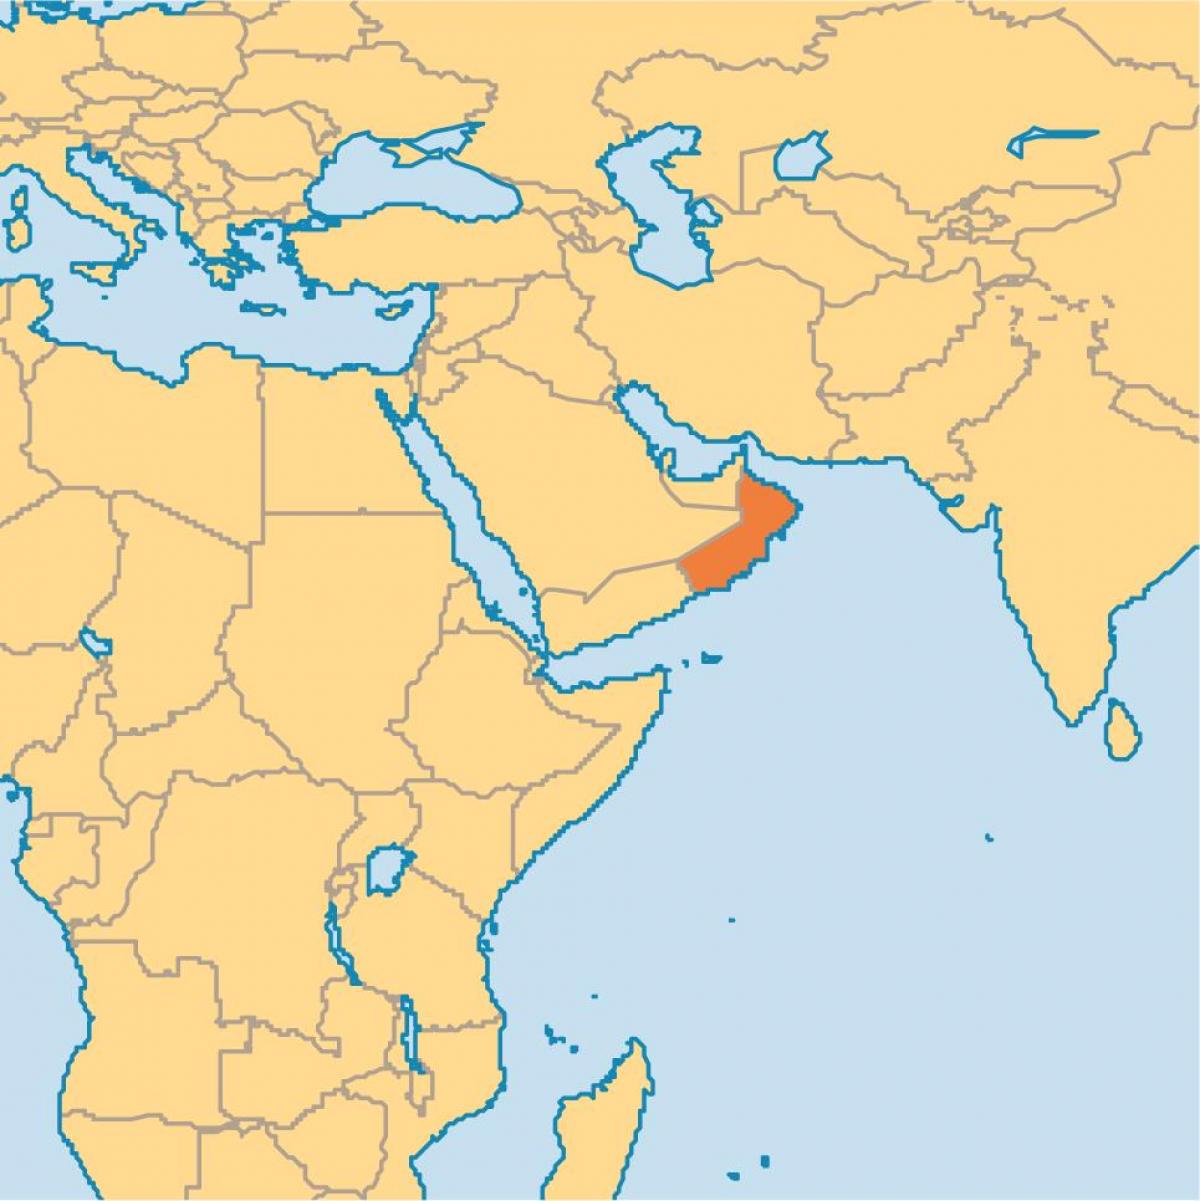 Oman hartë në hartë të botës